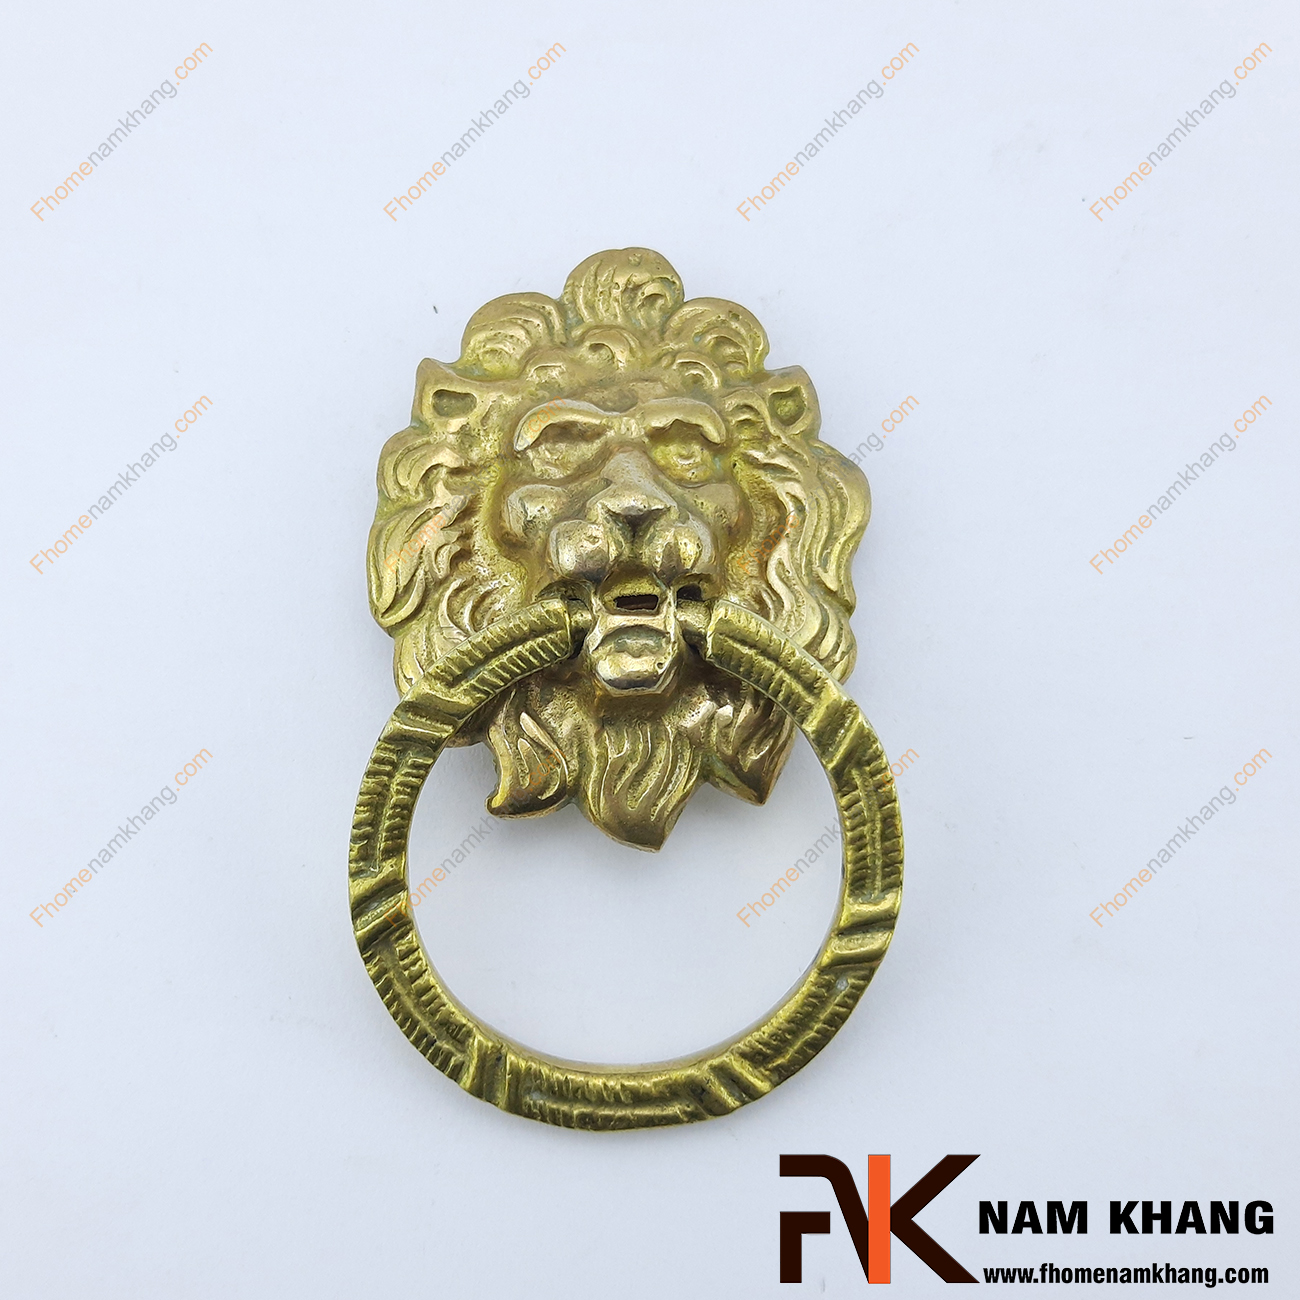 Núm đồng đầu sư tử NKD032 là một sản phẩm nội thất được chế tạo lấy cảm hứng từ sự uy quyền của loài sư tử dũng mãnh.